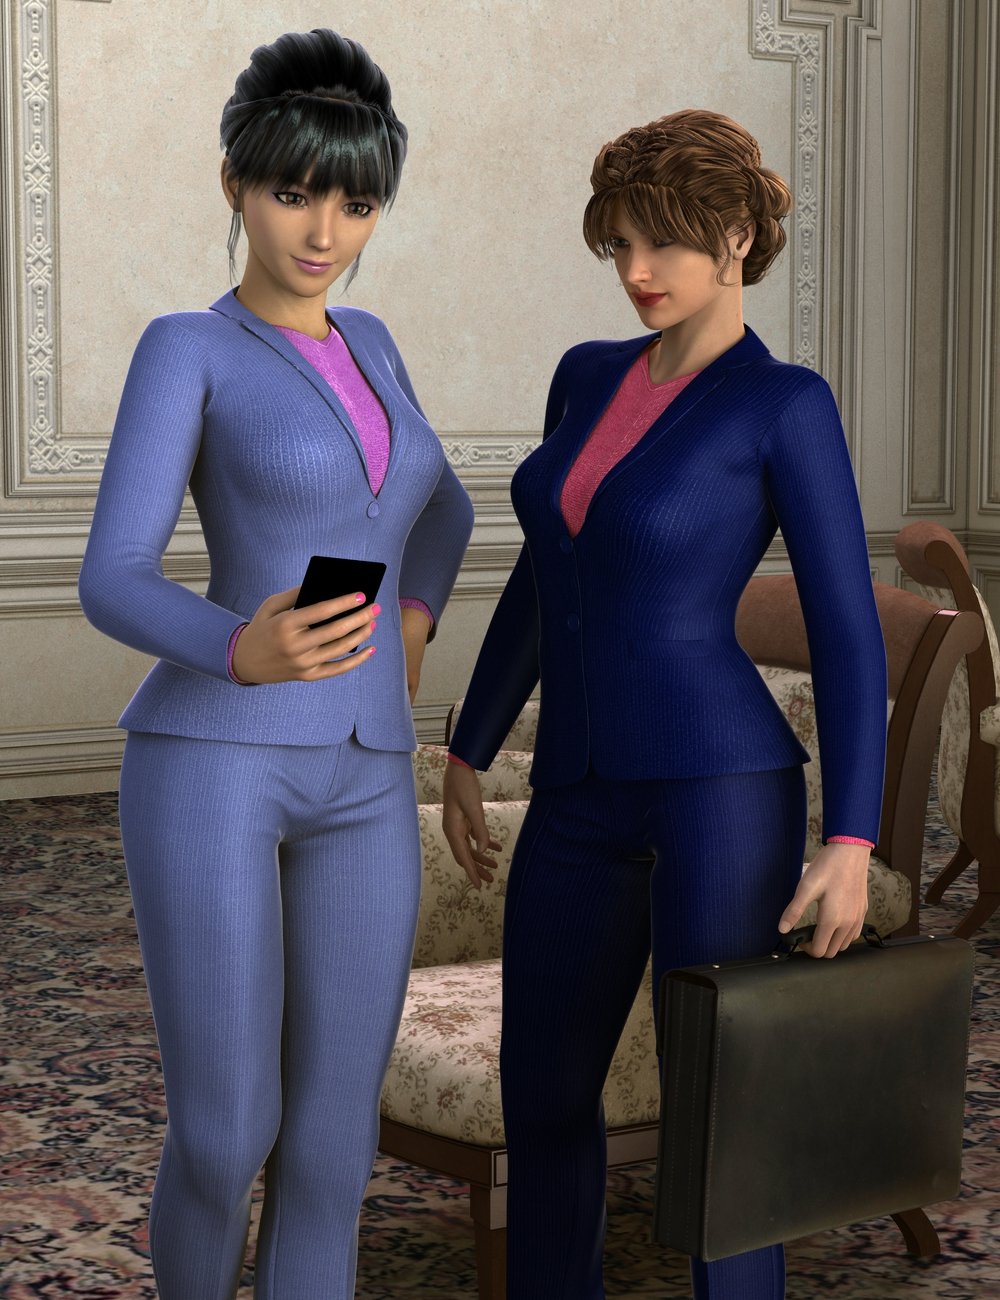 Women's Business Suit by: , 3D Models by Daz 3D